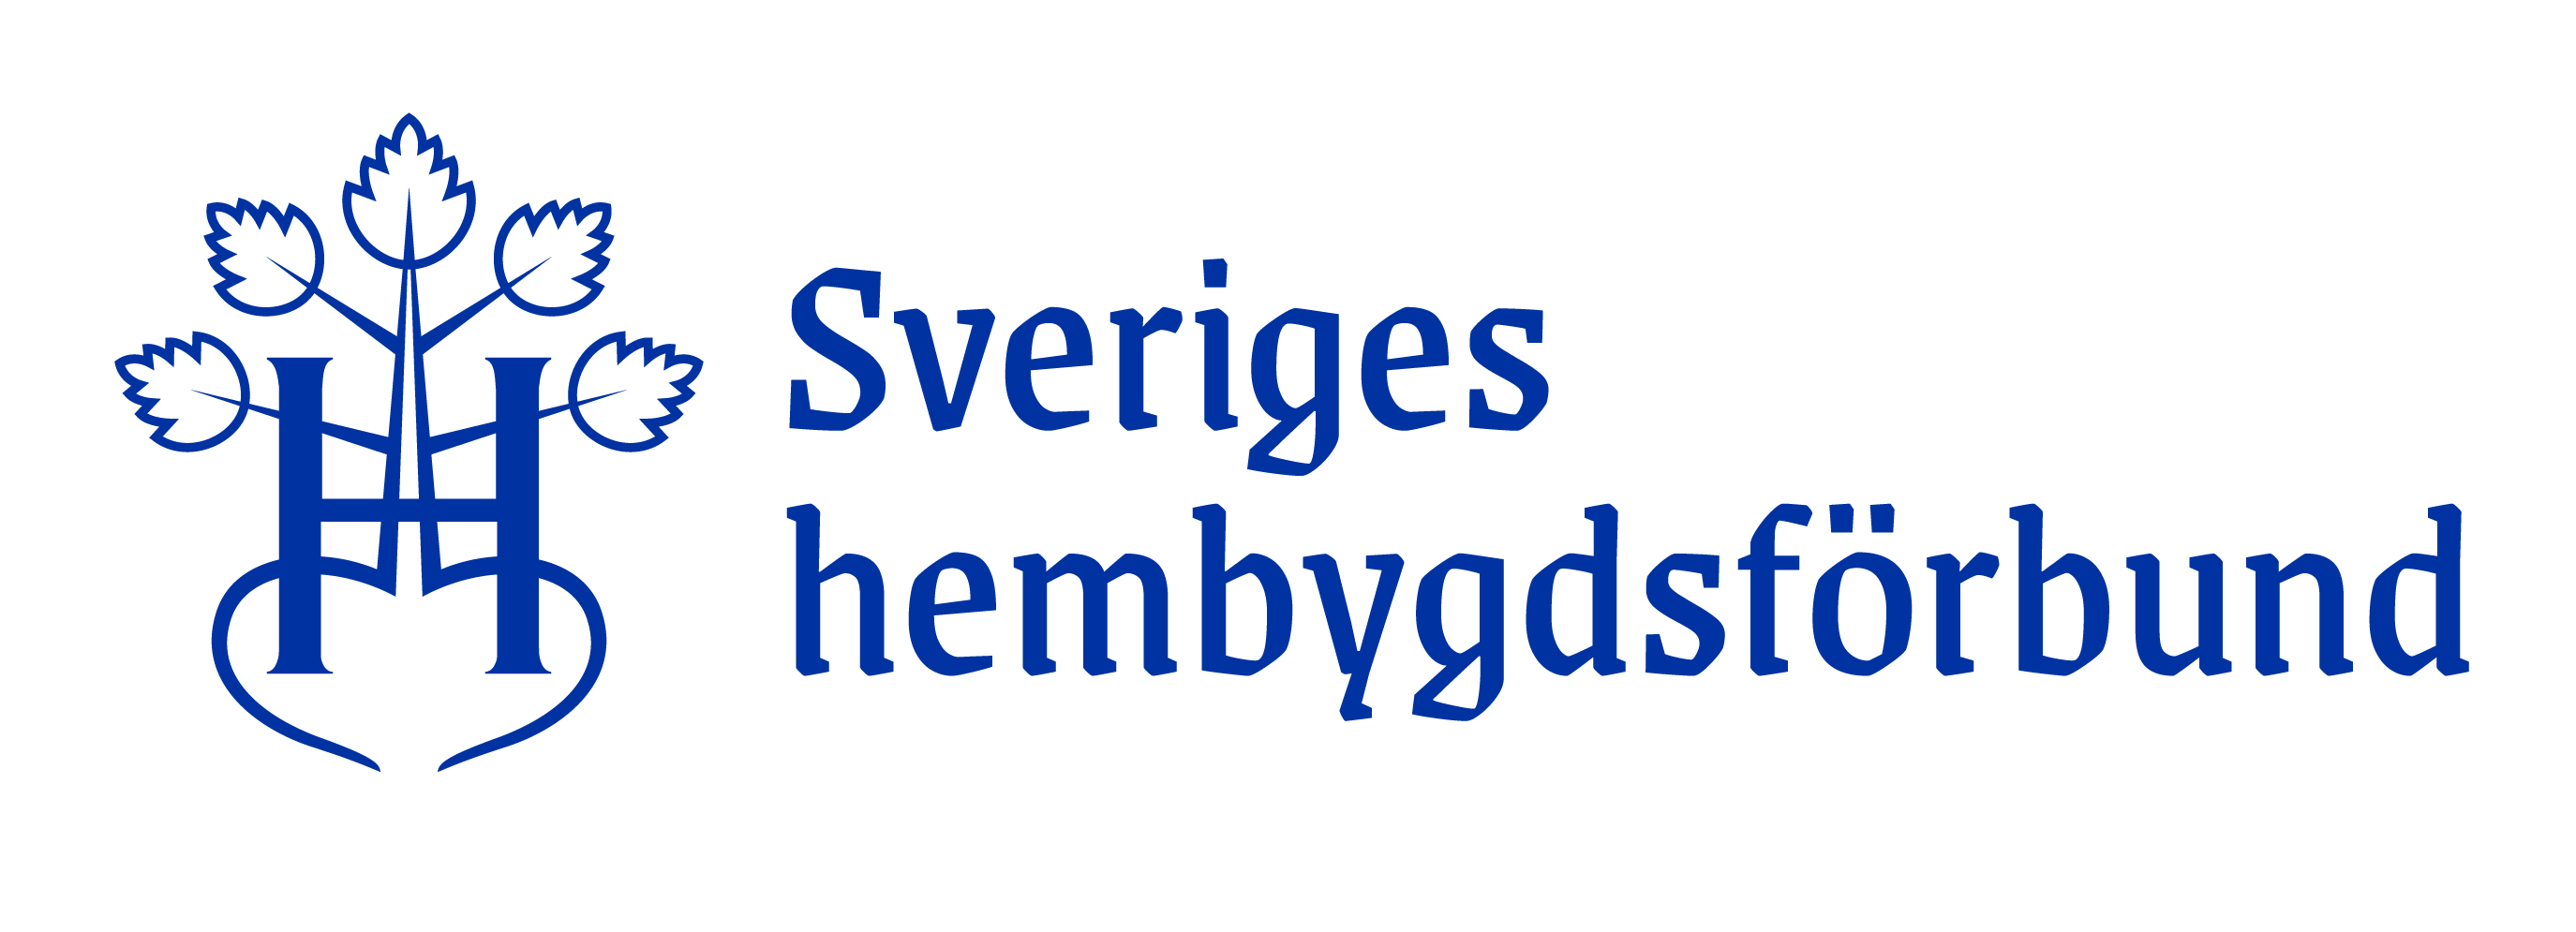 Sveriges Hembygdsförbund logo - Slöinge-Eftra Hembygdsförening